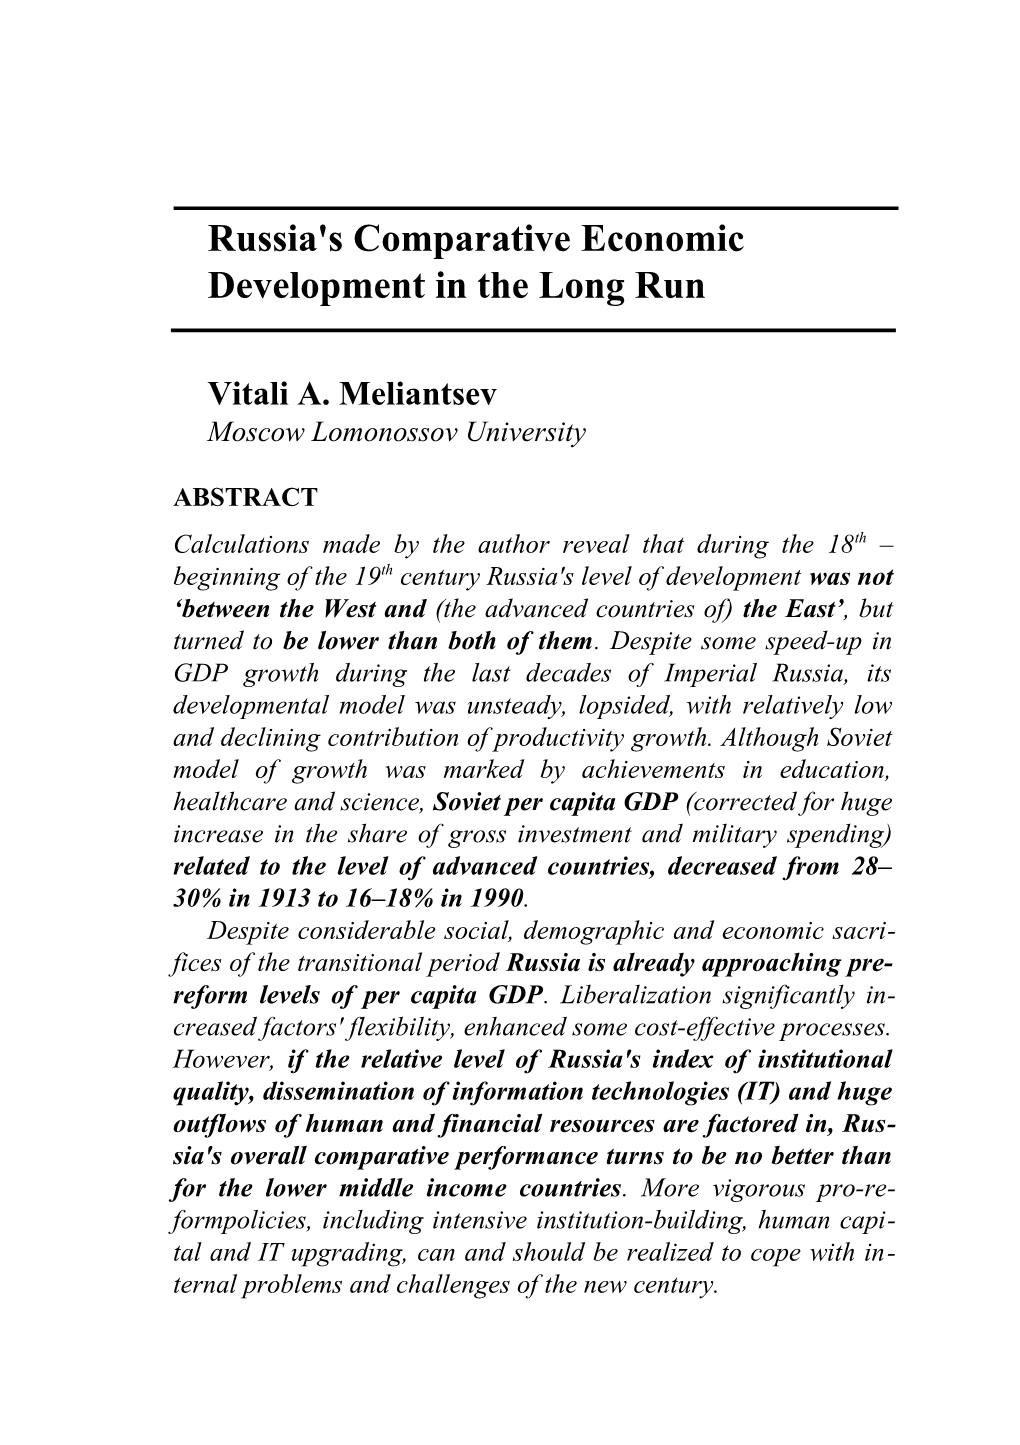 Meliantsev / Russia's Comparative Economic Development in the Long Run